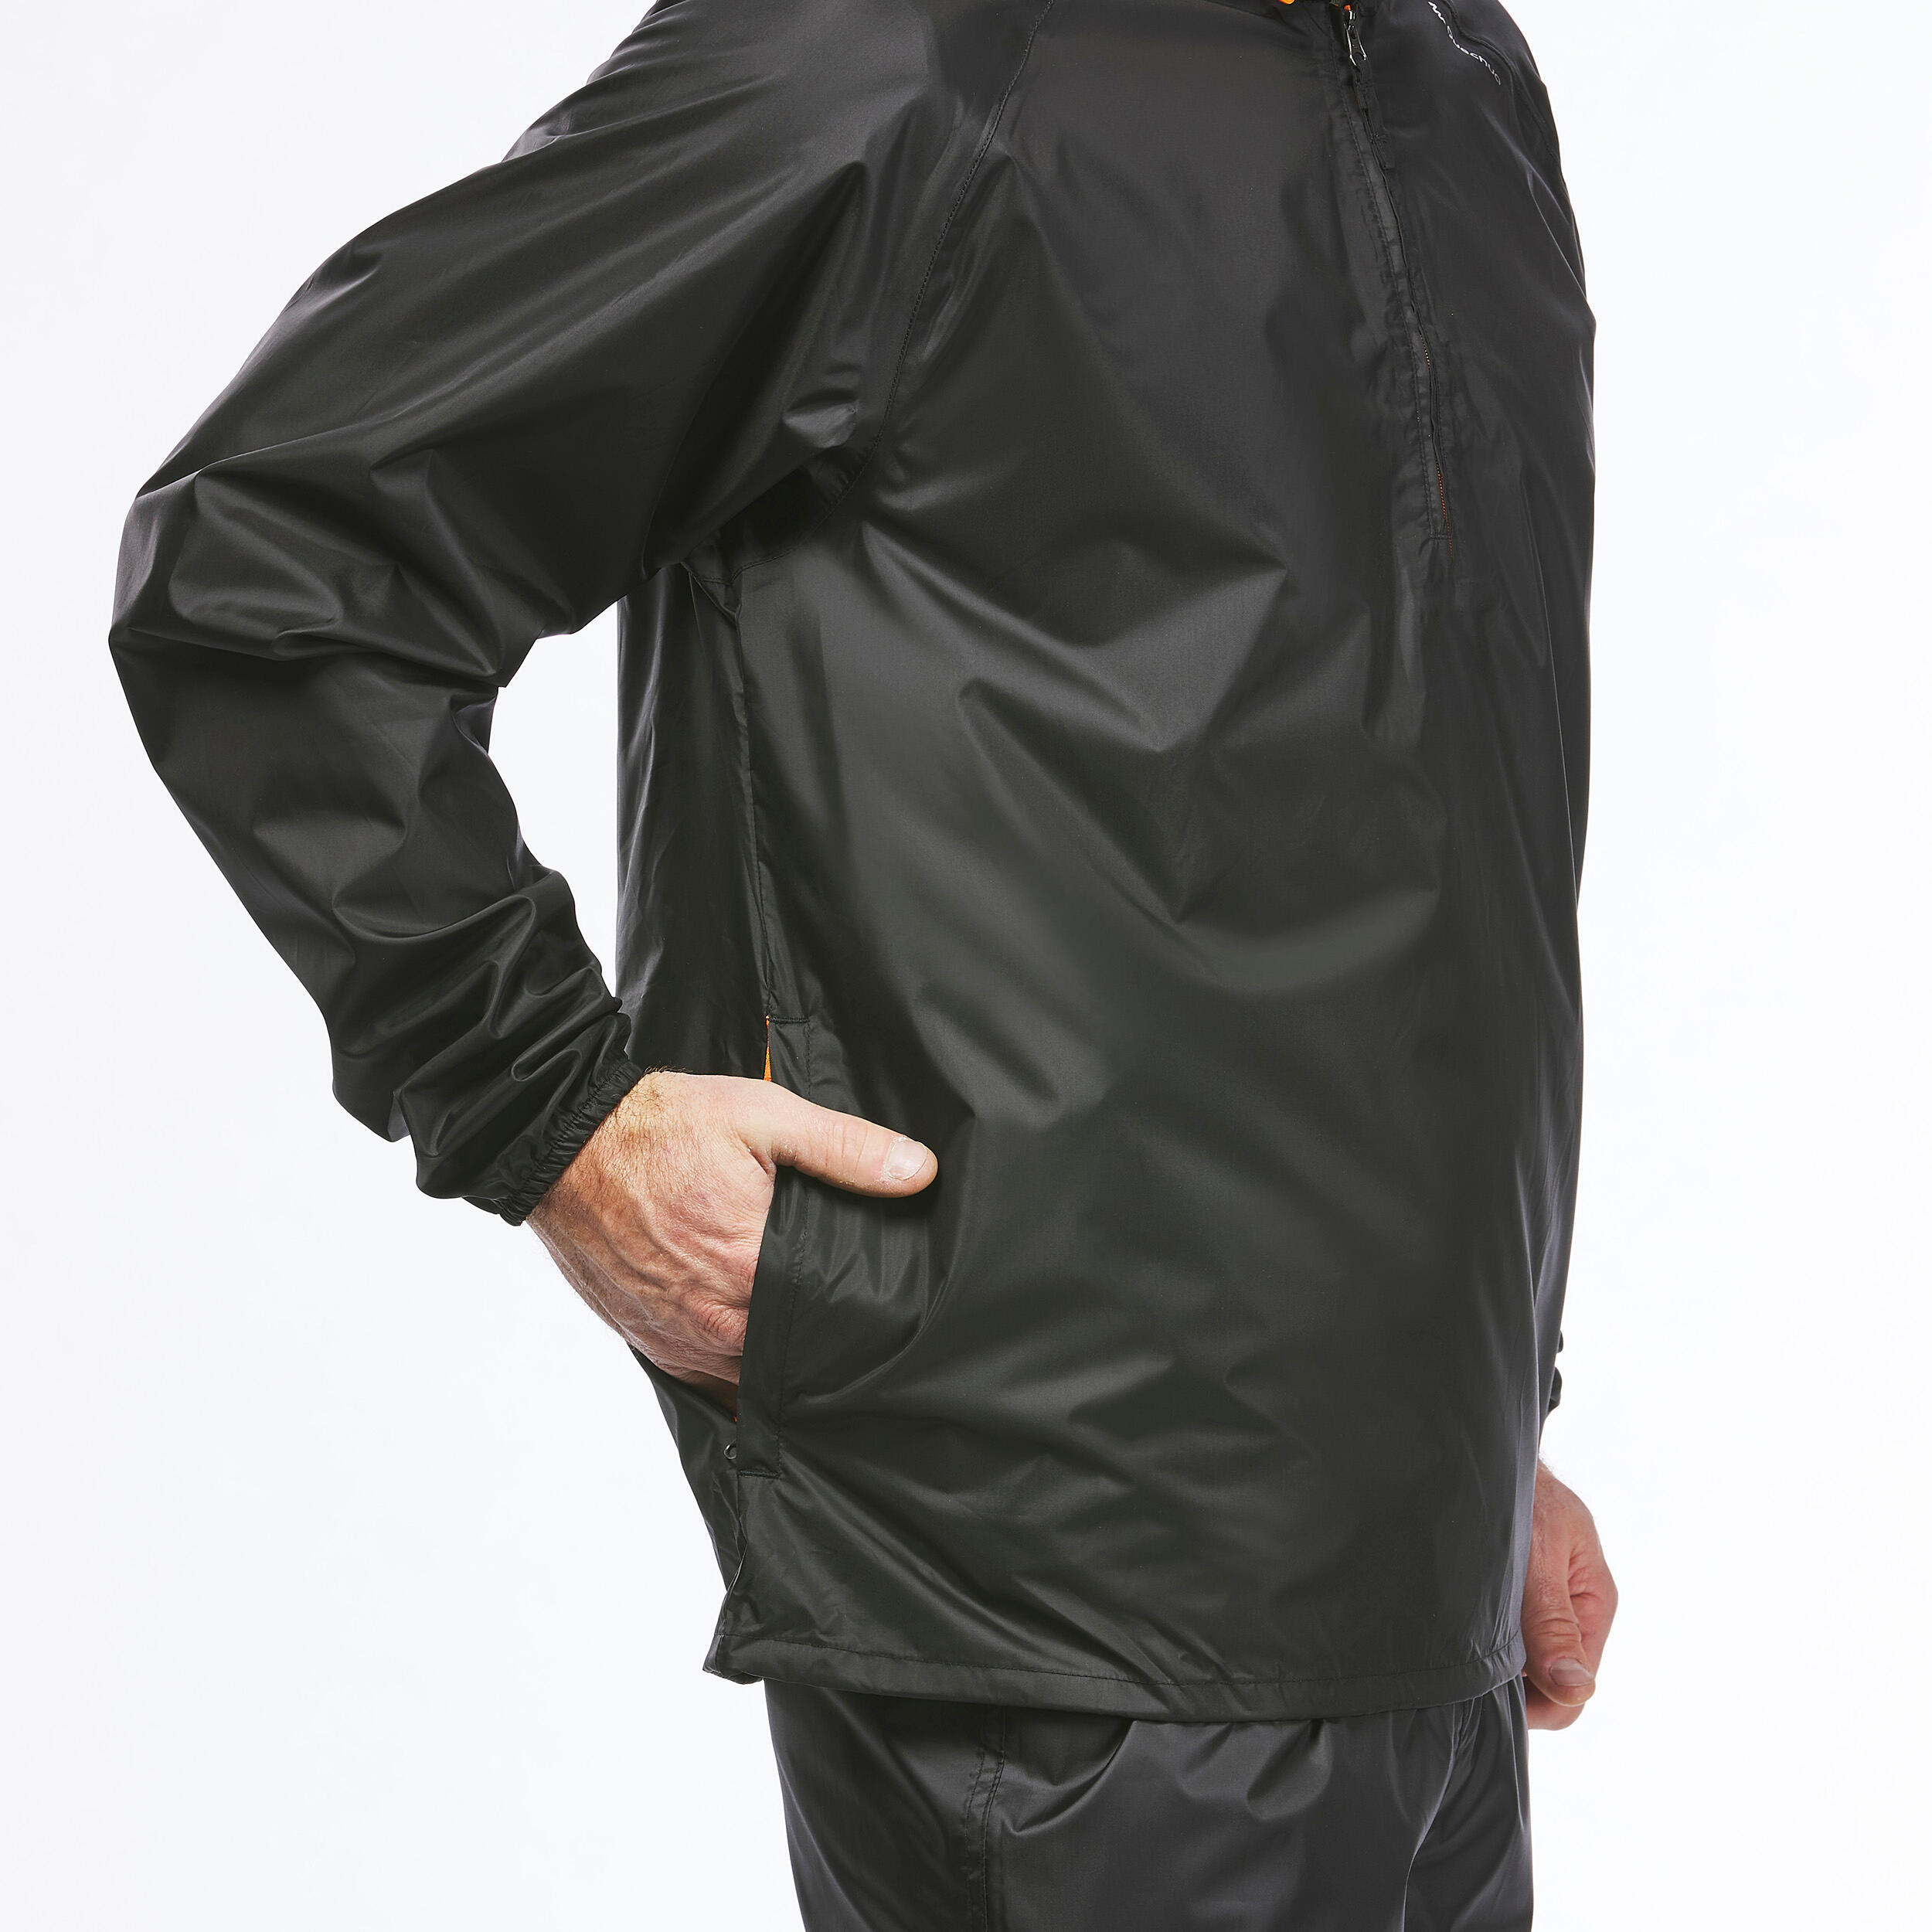 Men's Windproof and Water-repellent Hiking Jacket - Raincut 1/2 Zip 4/19